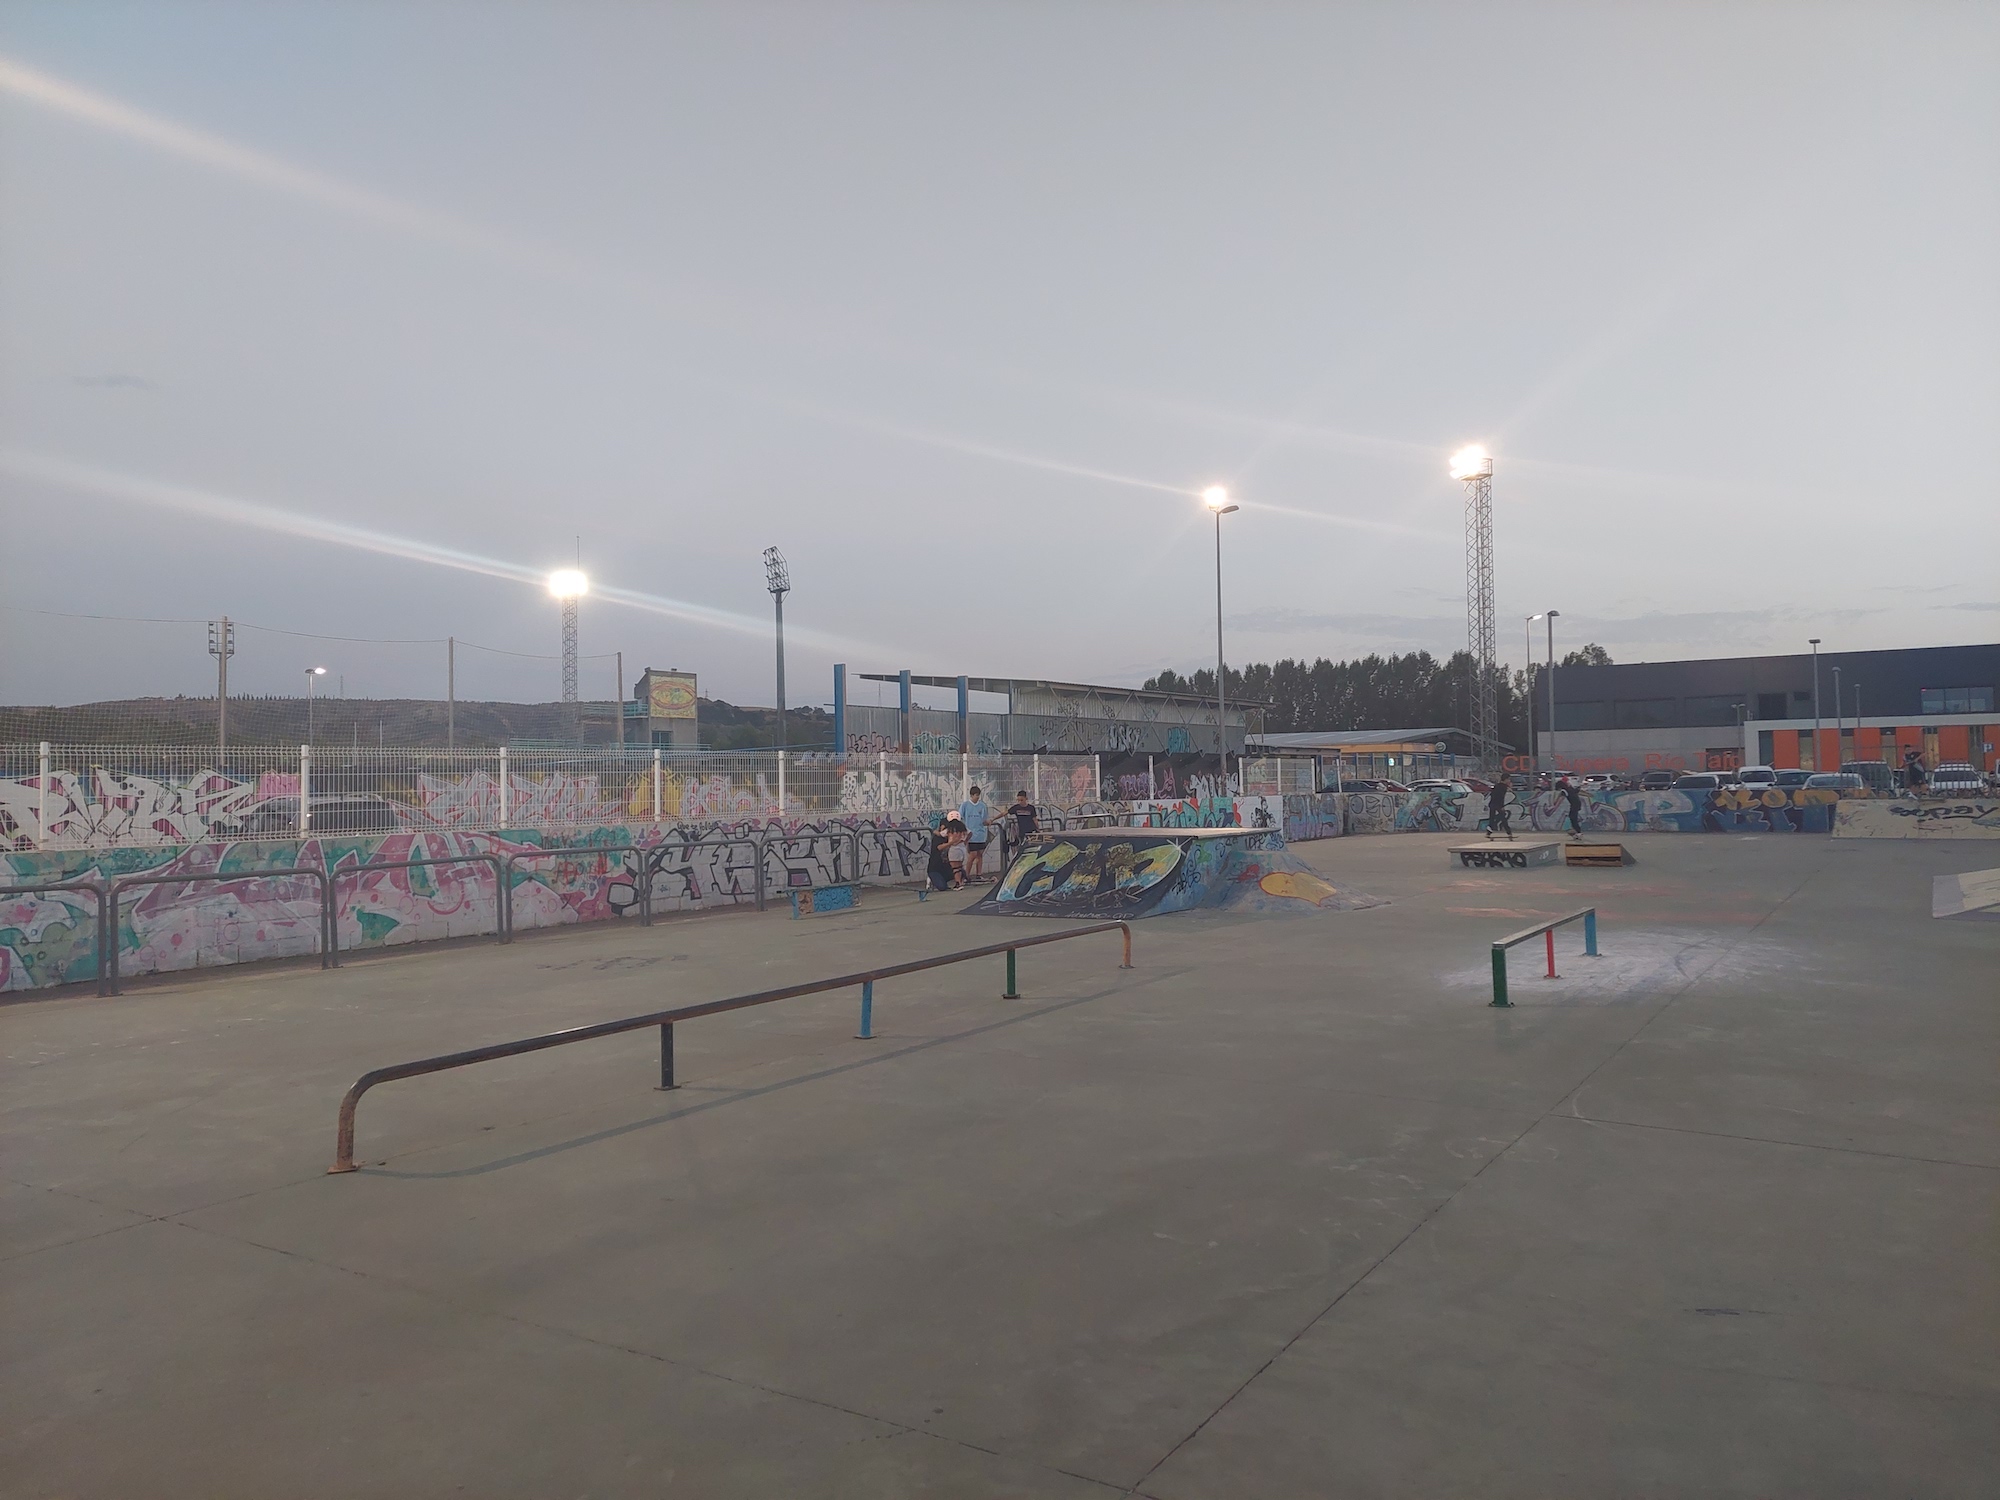 Talavera skatepark